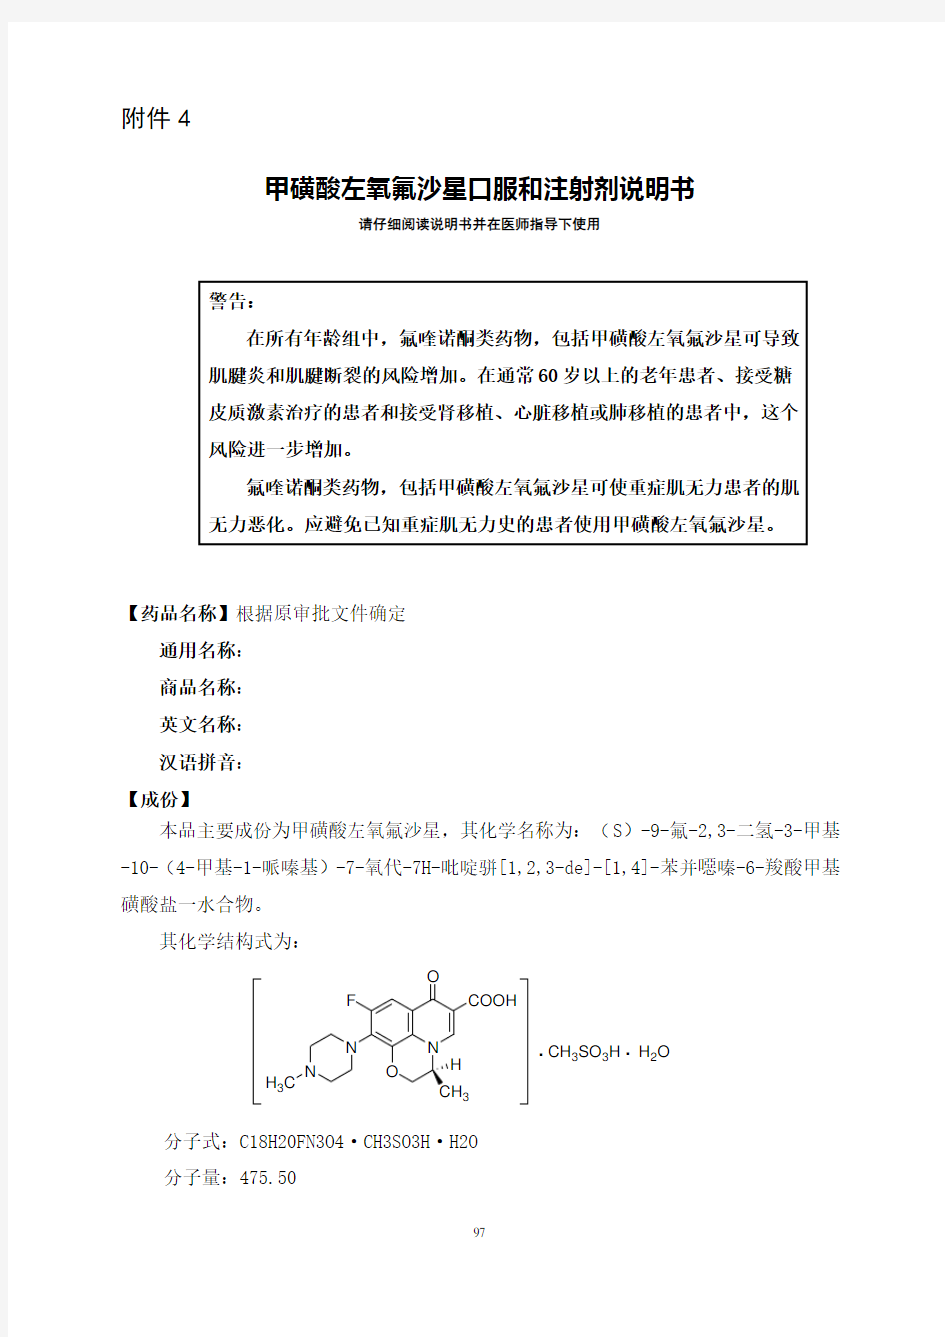 国食药监注[2012]373号 附件4-甲磺酸左氧氟沙星口服和注射剂说明书